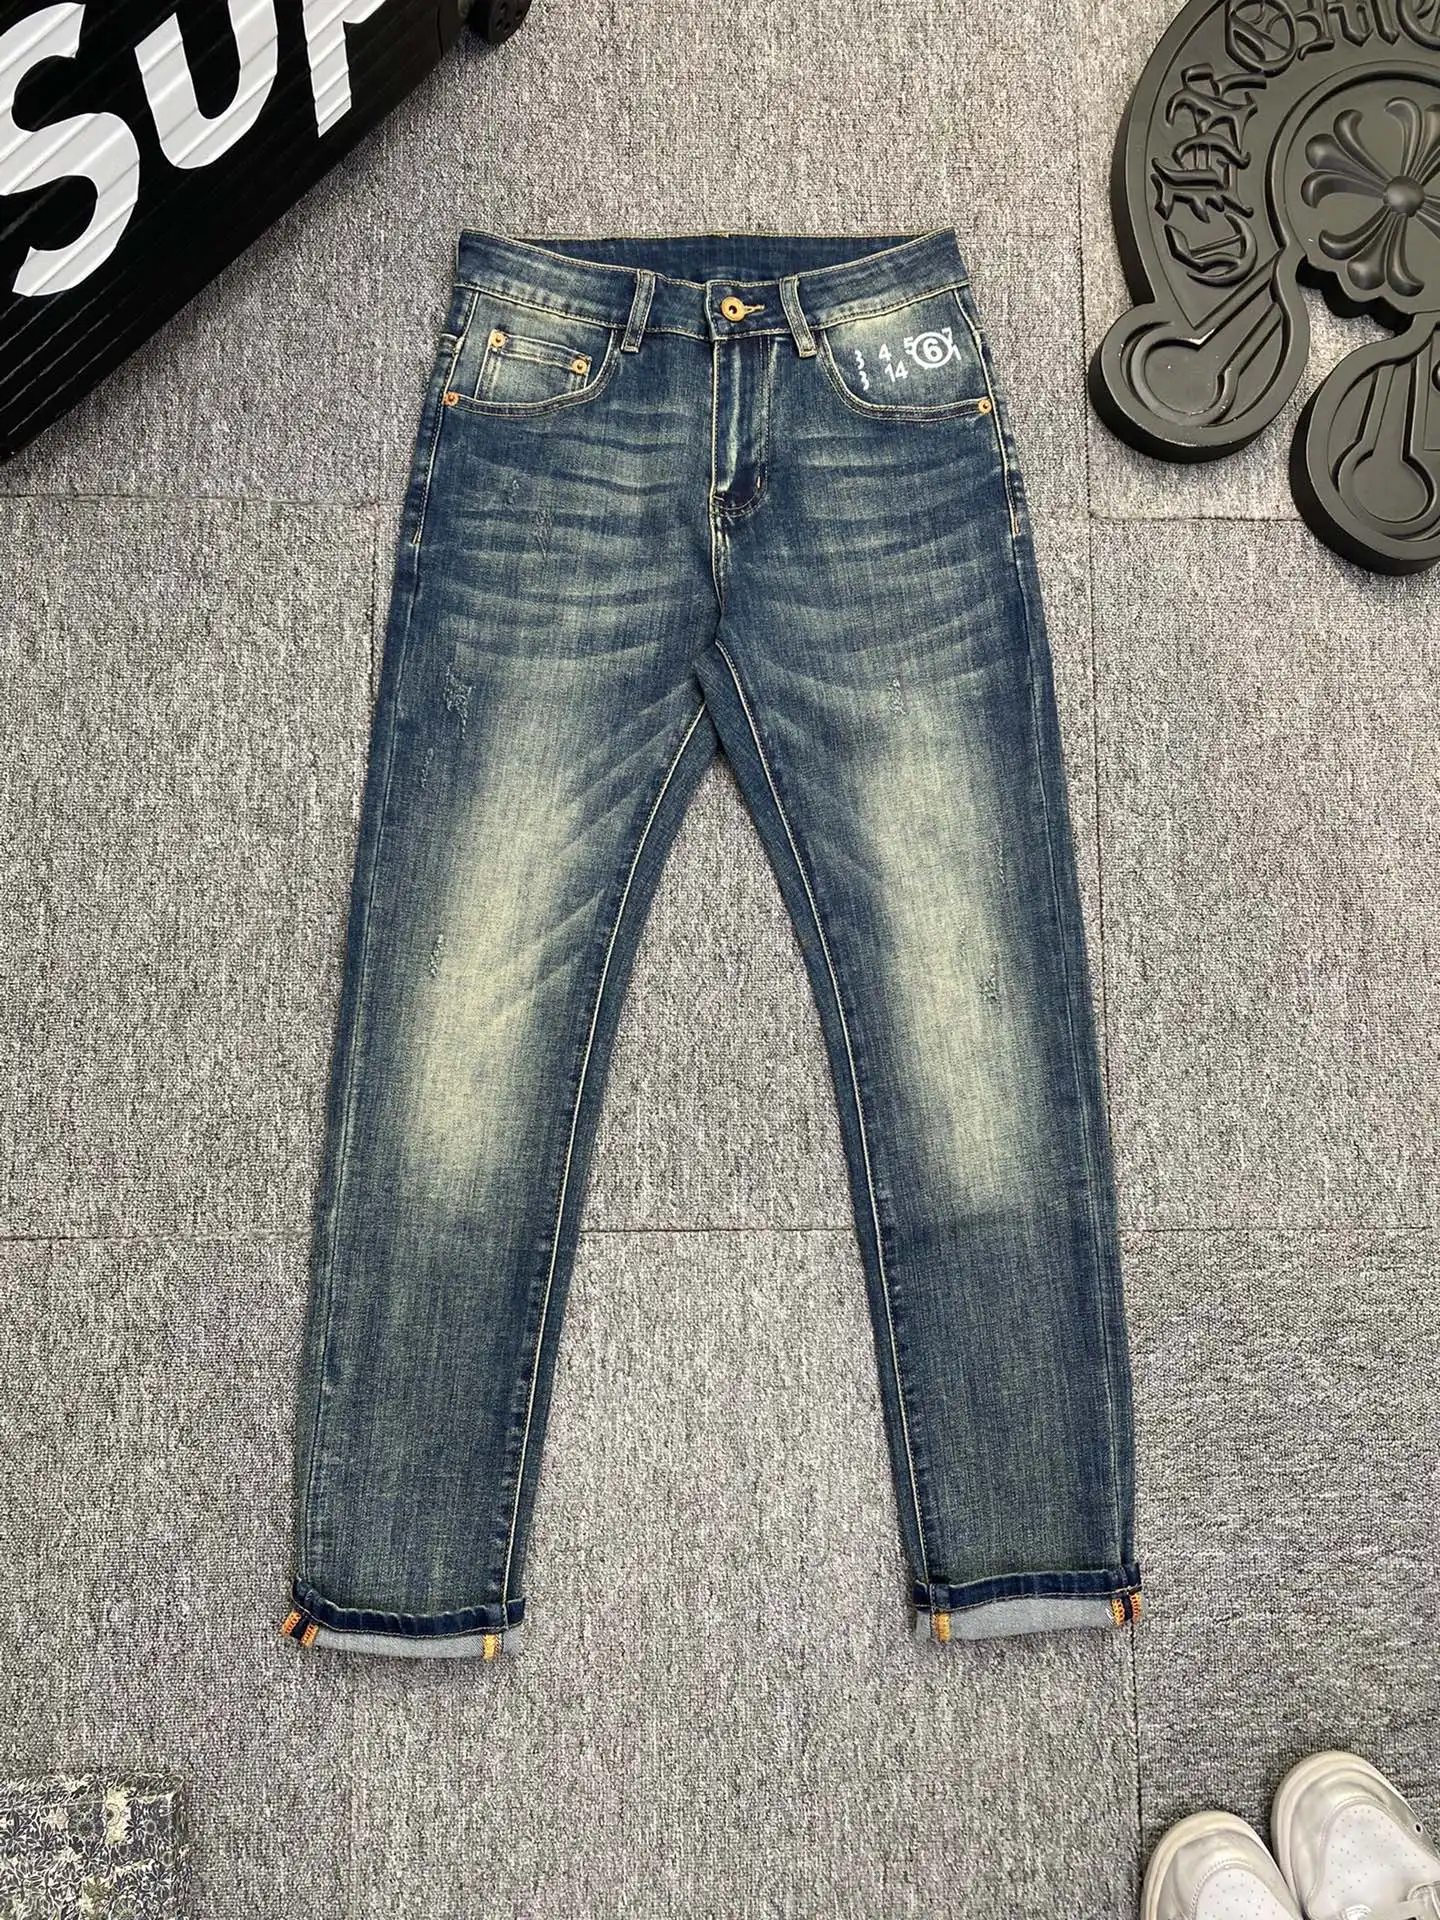 

MMsix Men's Jeans Pocket Number Design Spring Summer Black Blue Cargo Jeans Men Trousers Slim Fit Pencil Denim Pants